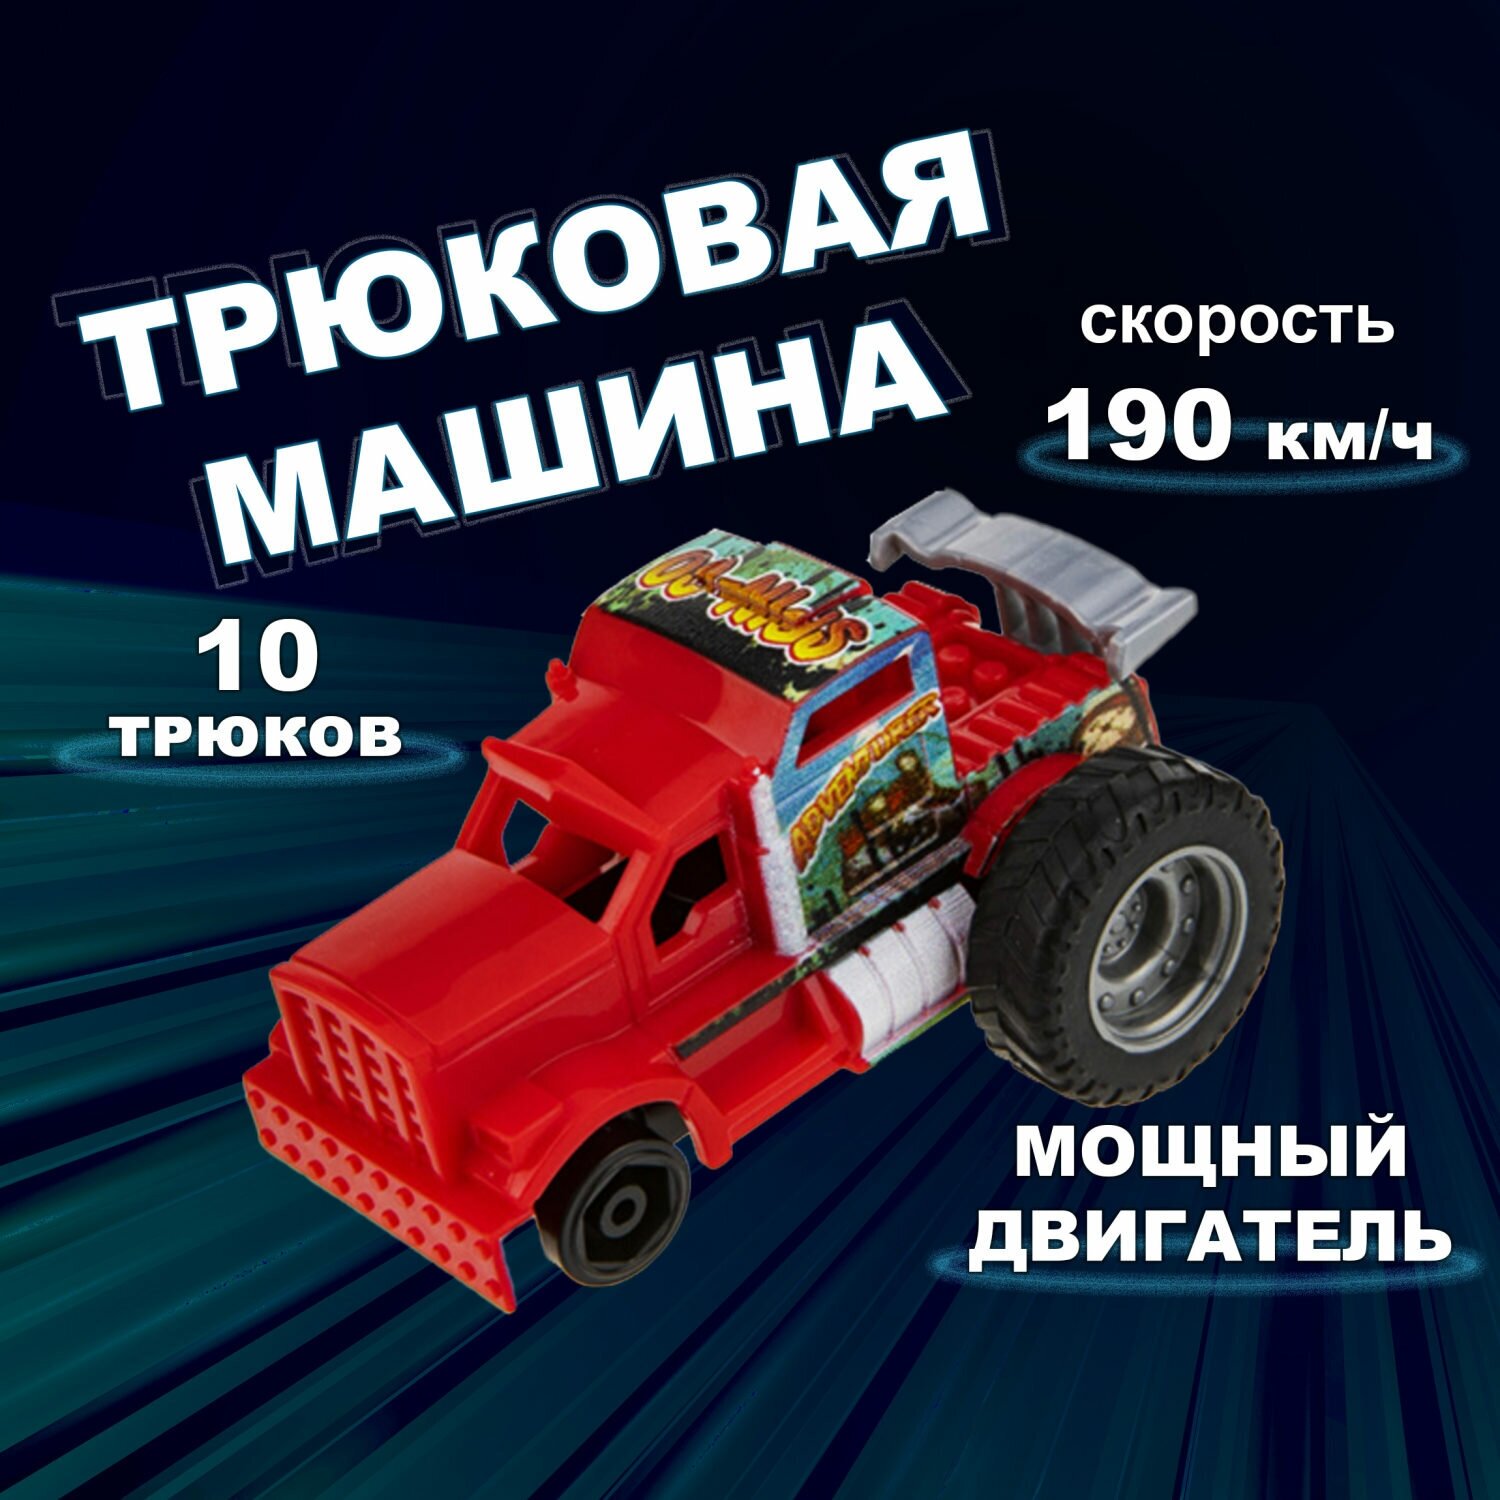 Машинка игрушка для мальчика 1toy Трюк-трек с 2 аксессуарами, фрикционная, пластиковая, игрушечный транспорт